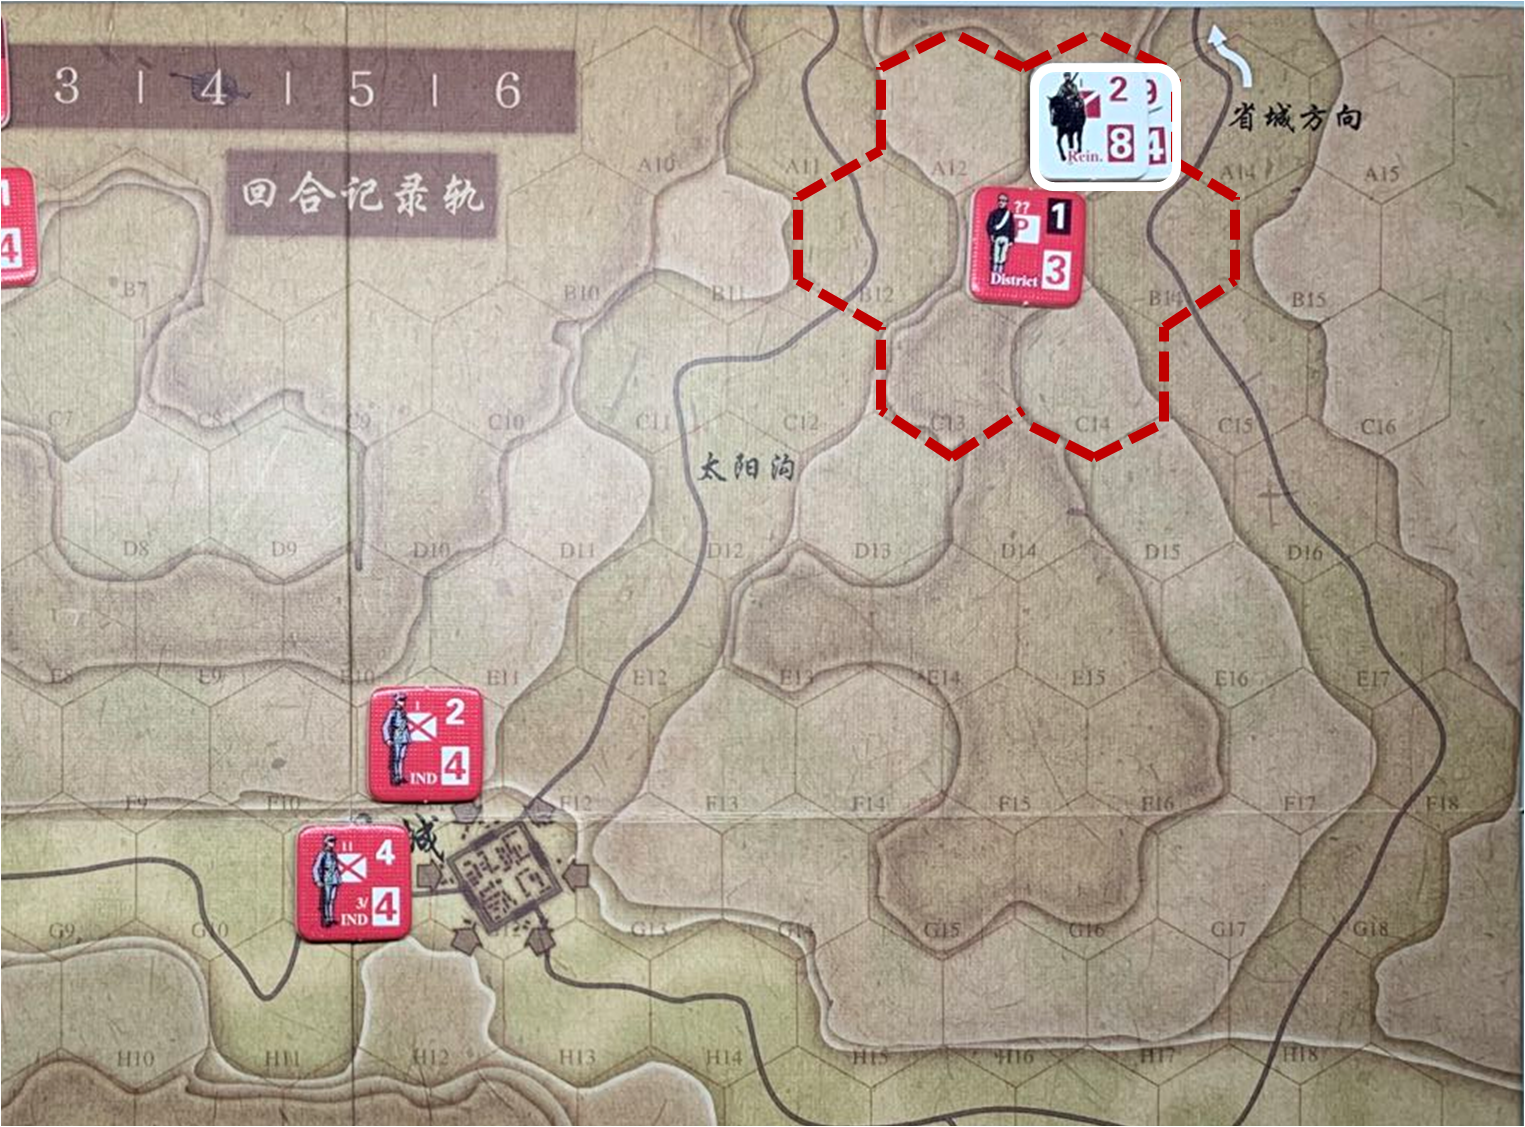 第二回合省城方向日軍增援部隊（A13）對於移動命令2的執行計劃與結果